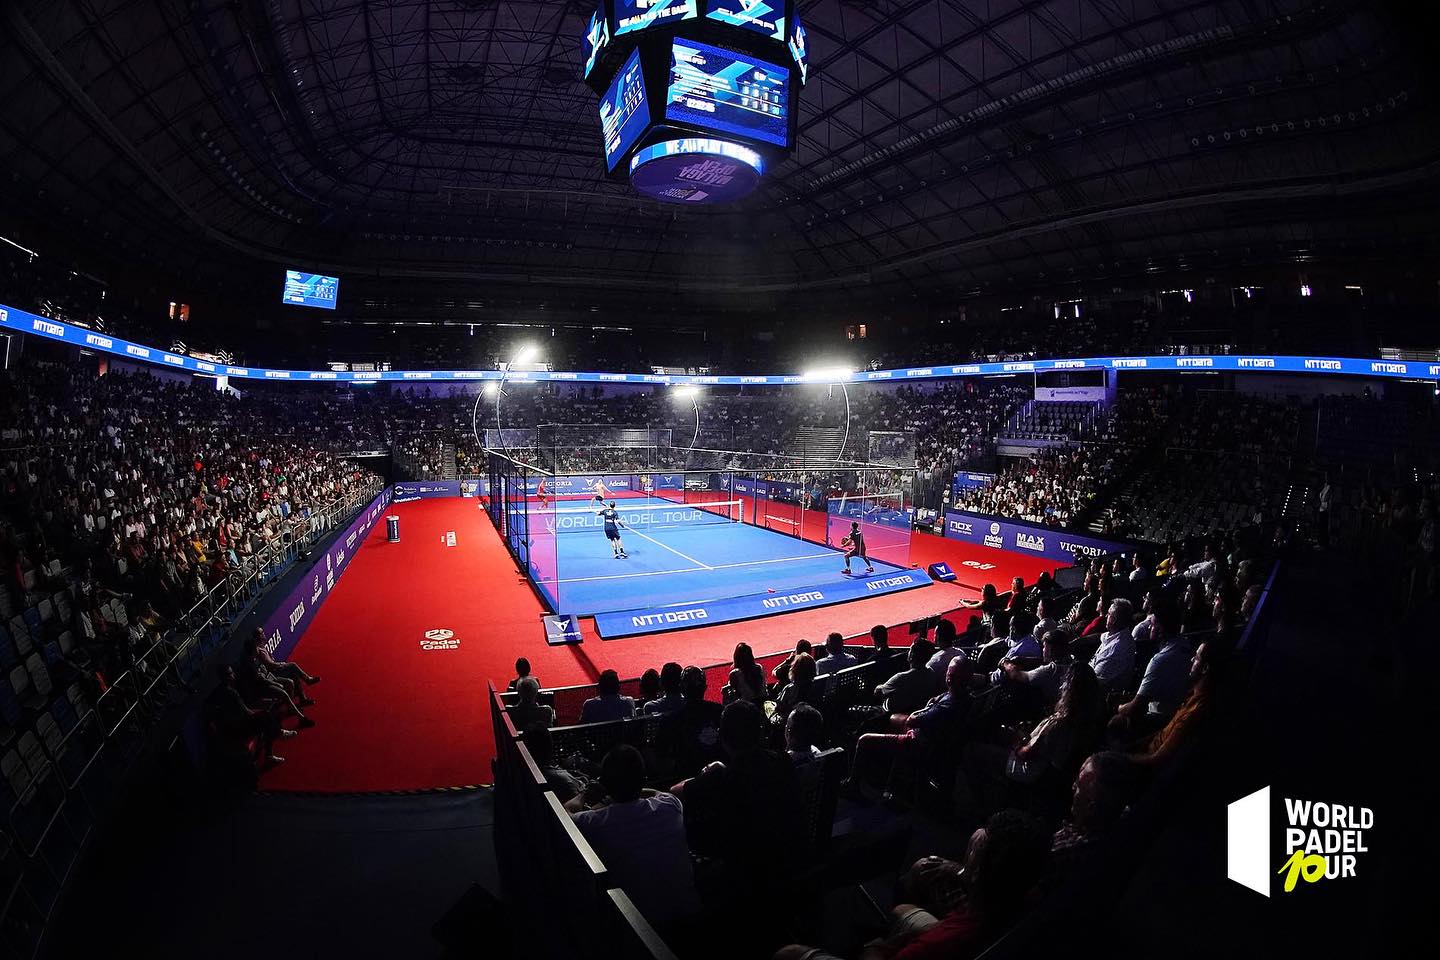 WPT Malaga Open – Il programma delle semifinali